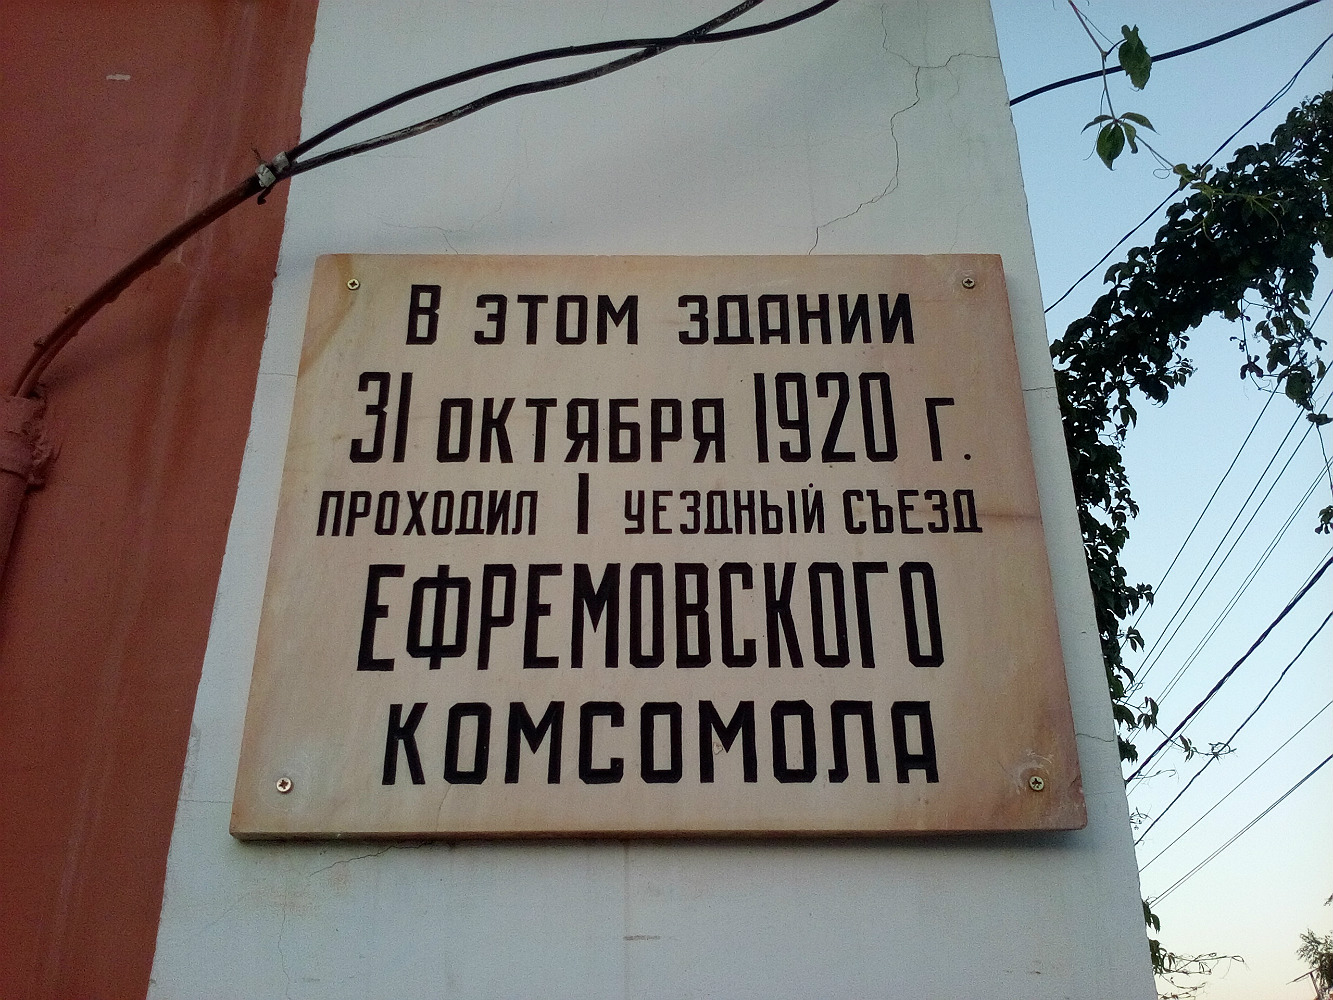 Jefriemow, Улица Гоголя, 19. Jefriemow — Memorial plaques